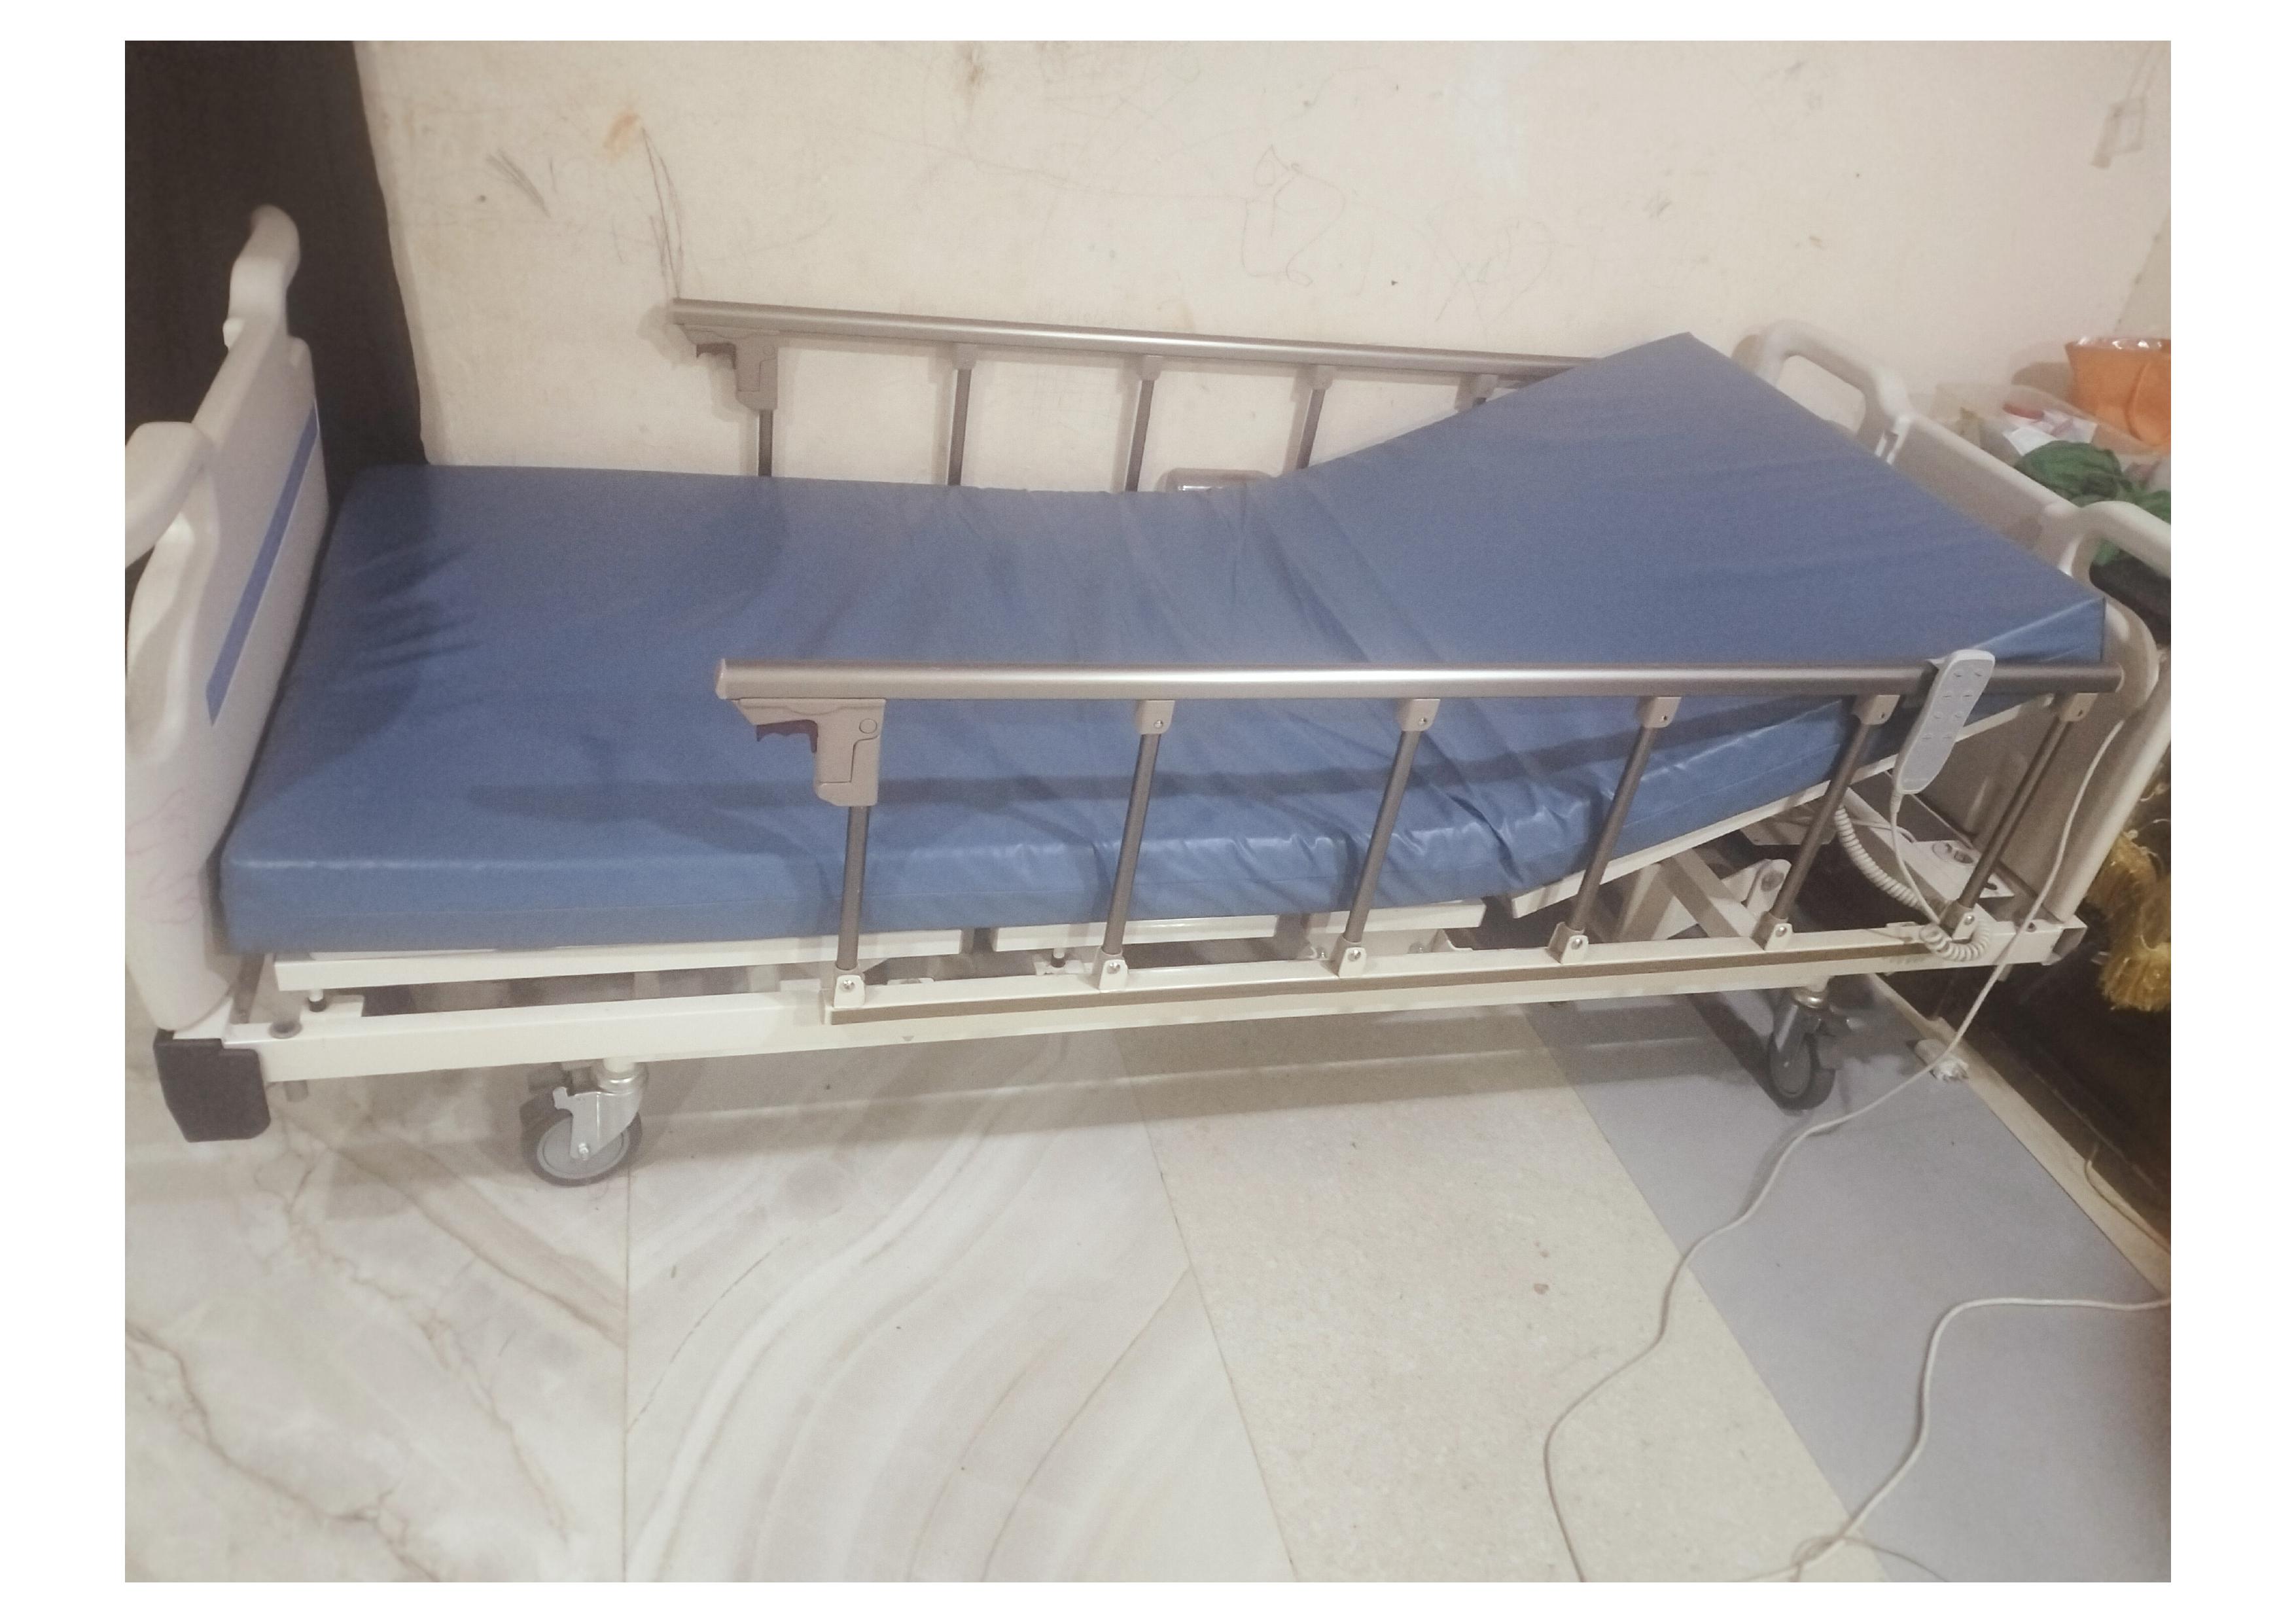 Medical Master Bed Model JCB35T